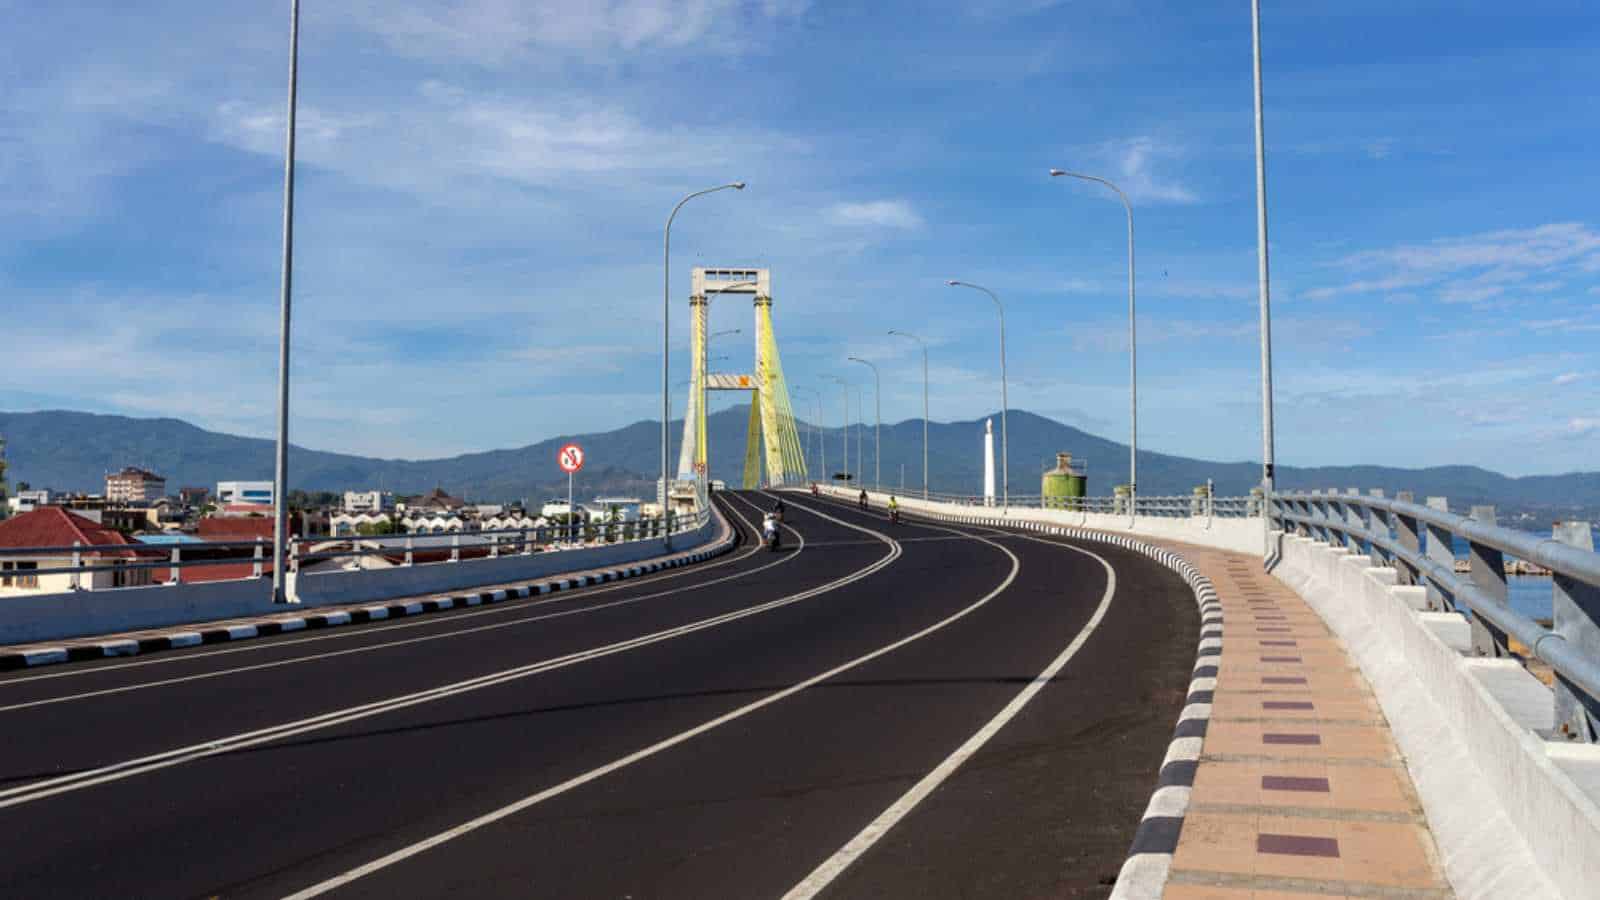 The Sukarno Bridge over the harbor in Manado, North Sulawesi, Indonesia